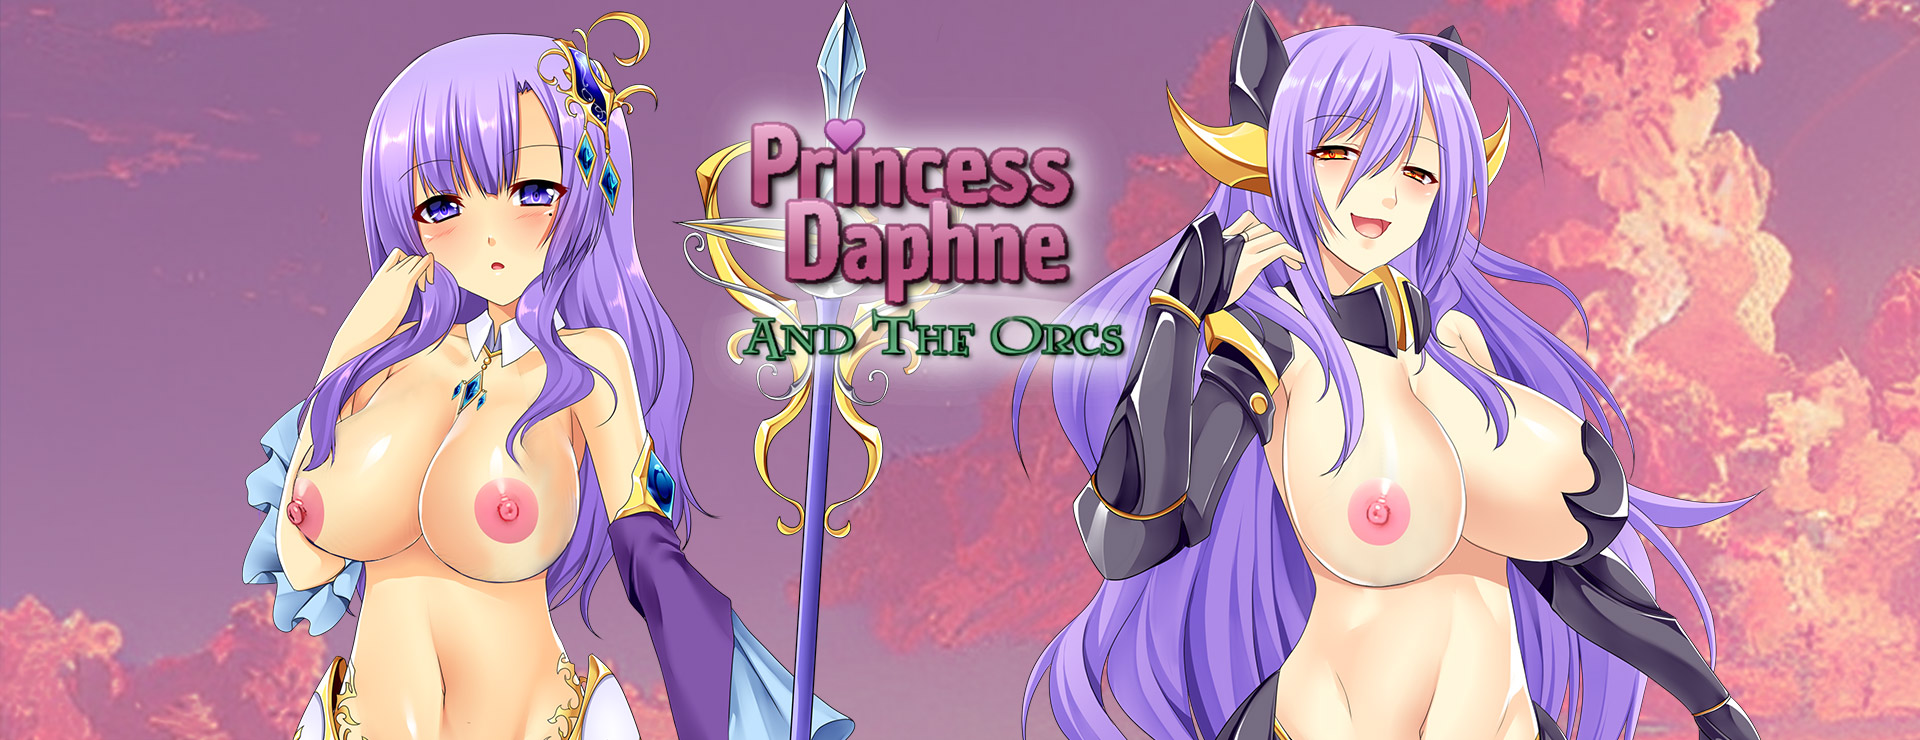 Princess Daphne and the Orcs - RPG Juego